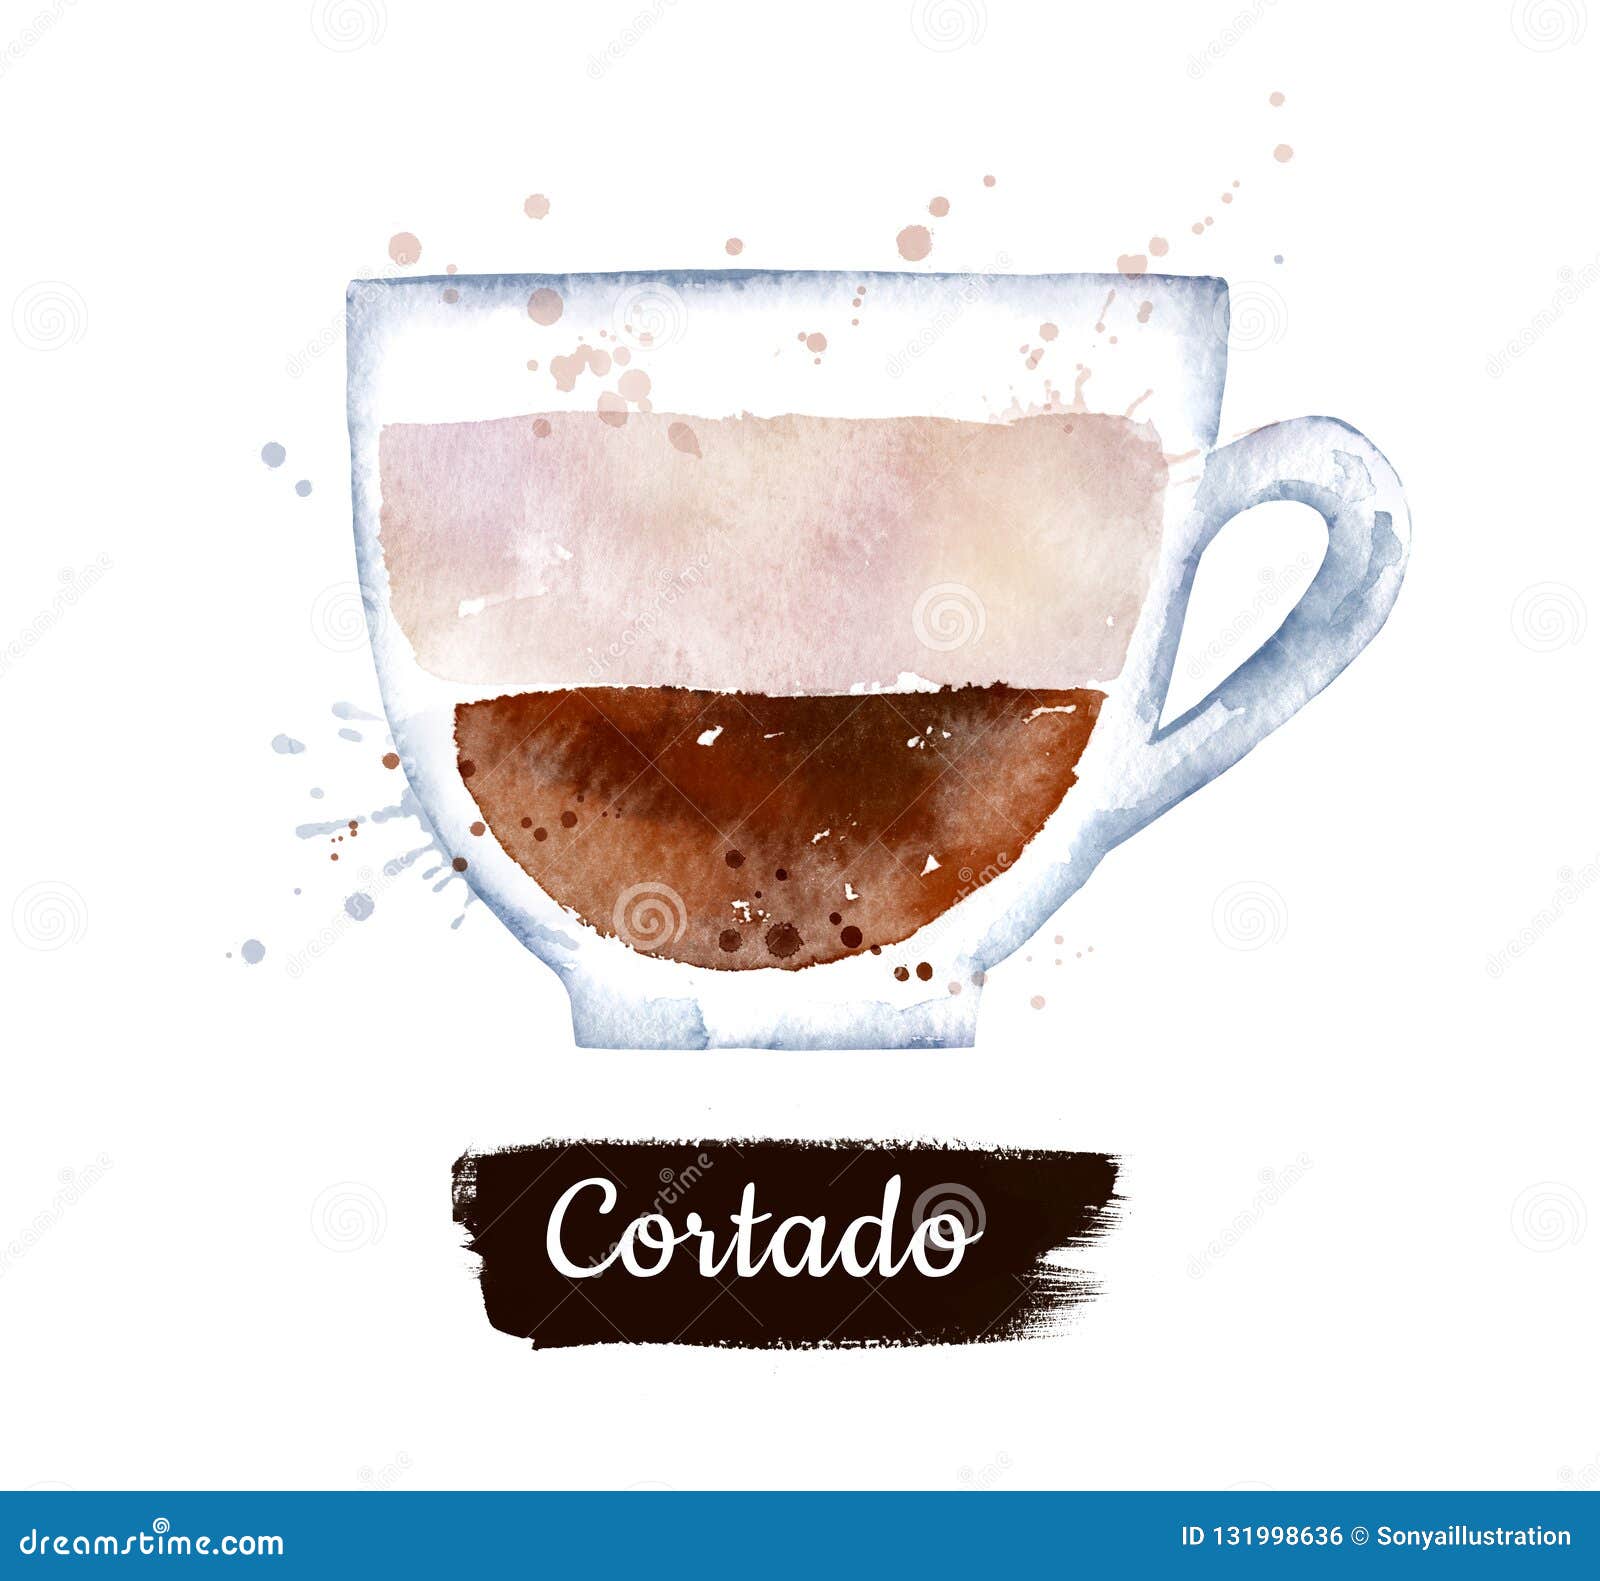 watercolor  of cortado coffee